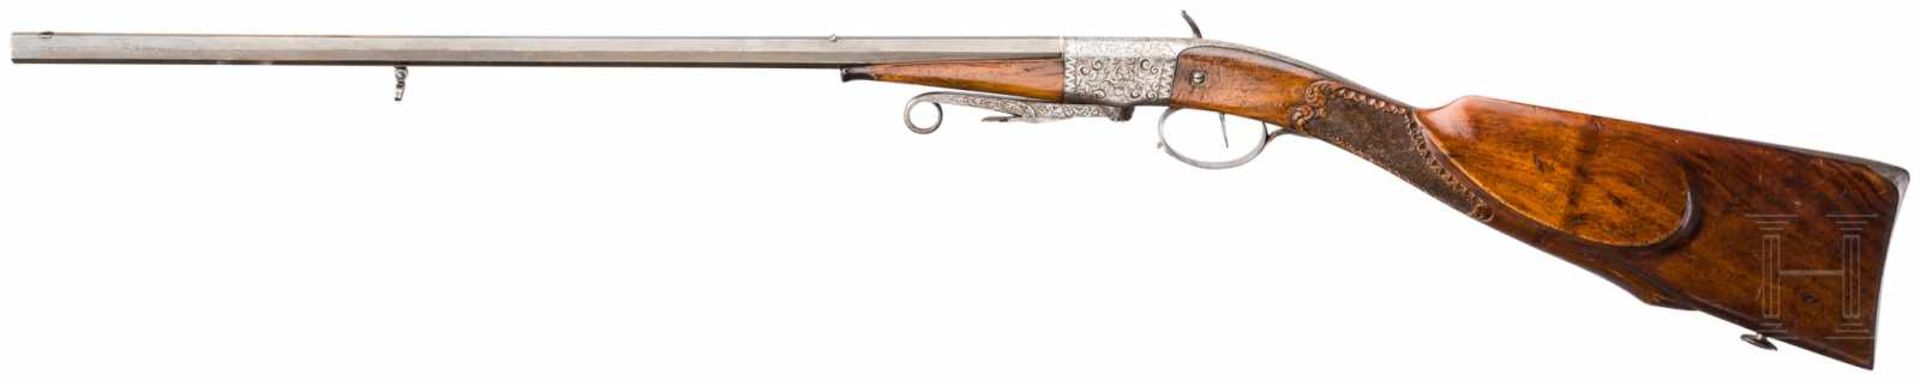 Zündpillen-Salongewehr, Zwelebil, Weiskirch, um 1850Brünierter, leicht beriebener Oktagonallauf im - Bild 2 aus 2